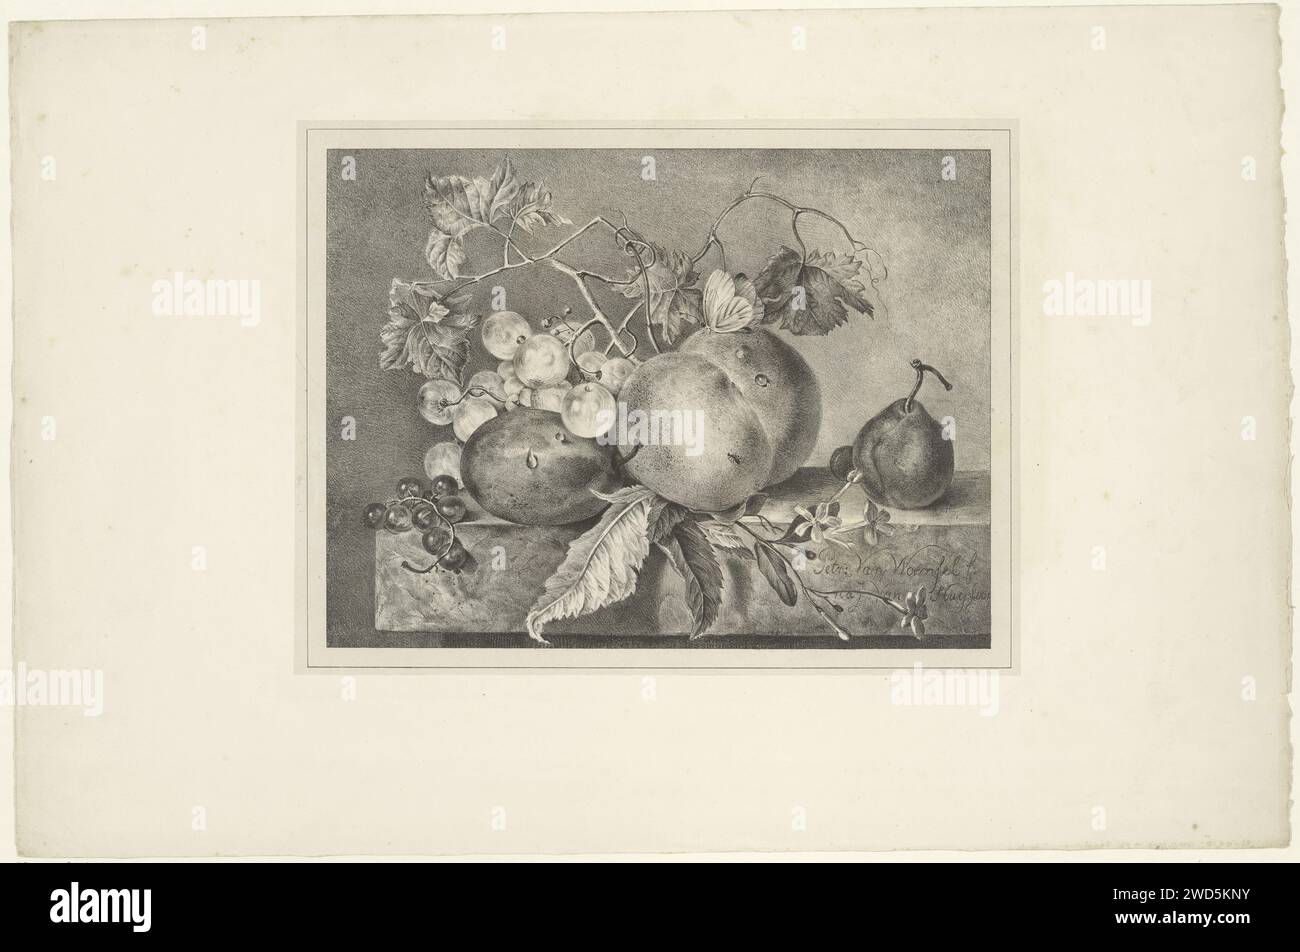 Fruitstill Leben auf einem Marmorblatt, Petronella van Woensel, nach Jan van Huysum, 1809–1839 Druck es gibt einen Schmetterling auf dem Pfirsich. Papier. Stillleben von Pflanzen, Blumen und Früchten. Insekten: Schmetterling Stockfoto